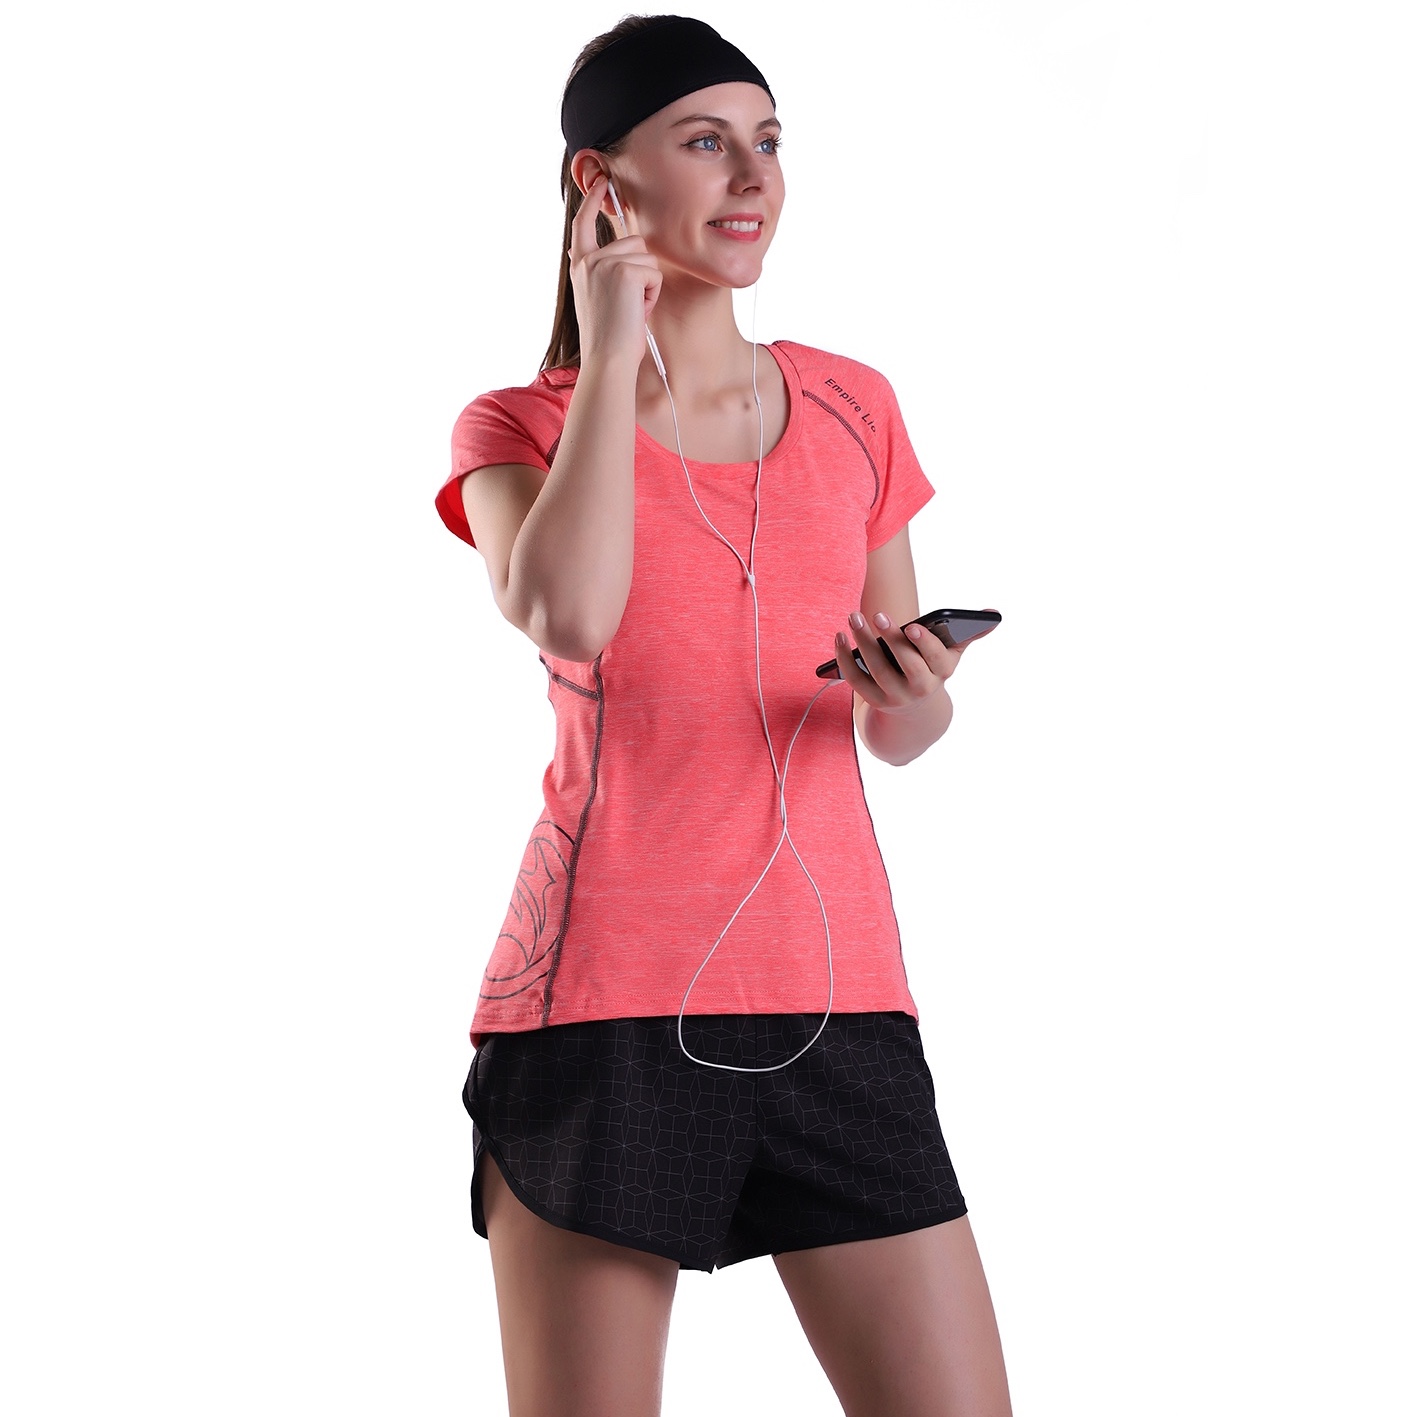 Mujeres Camiseta de sudor de sudor seca para mujeres Fitness deportivas Fitness Athletic Running Tops